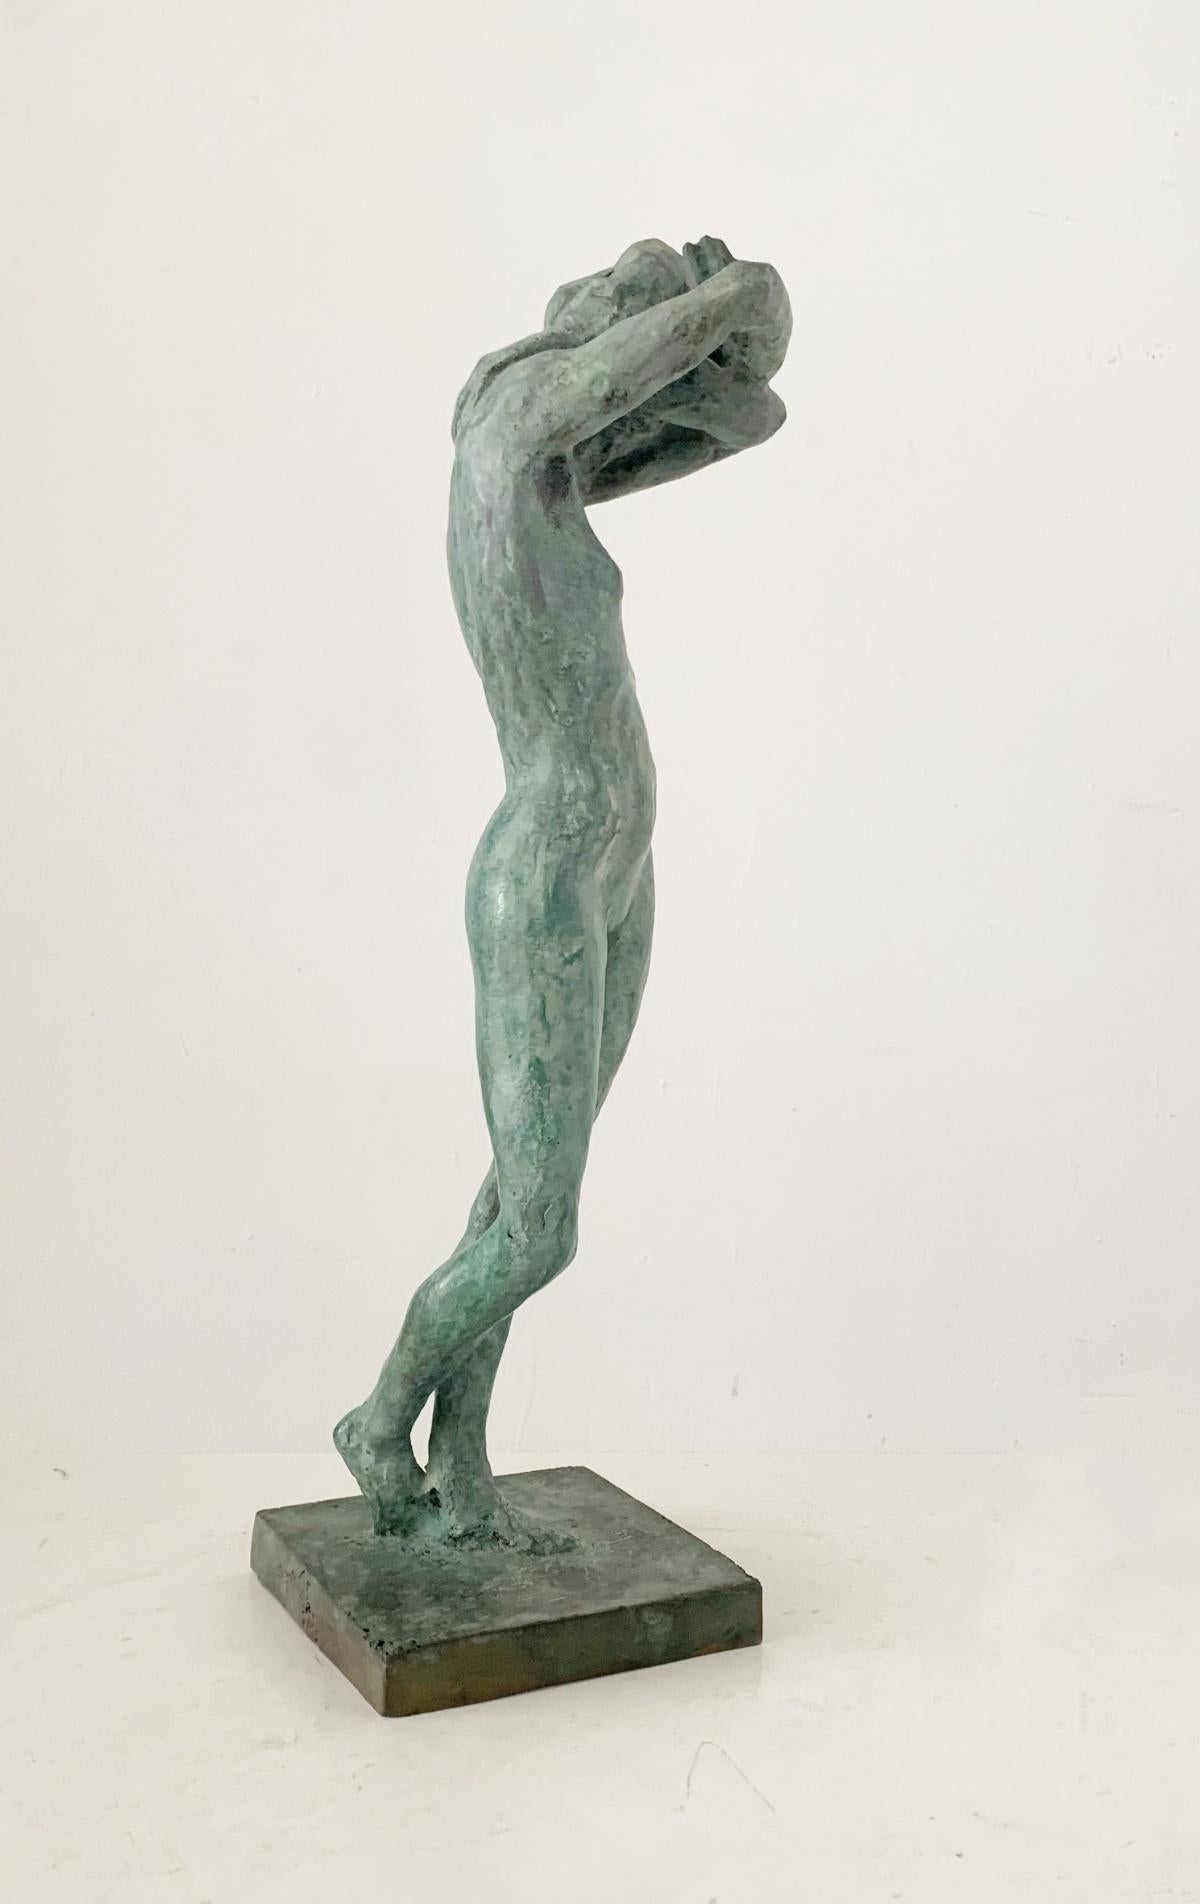 Sculpture en bronze en édition limitée de l'artiste polonaise Olga Prokop-Misniakiewicz. L'artiste signe ses œuvres à la main, à l'aide d'un outil de gravure. Édition de 5 exemplaires. Olga Prokop-Misniakiewicz aime expérimenter avec la matière